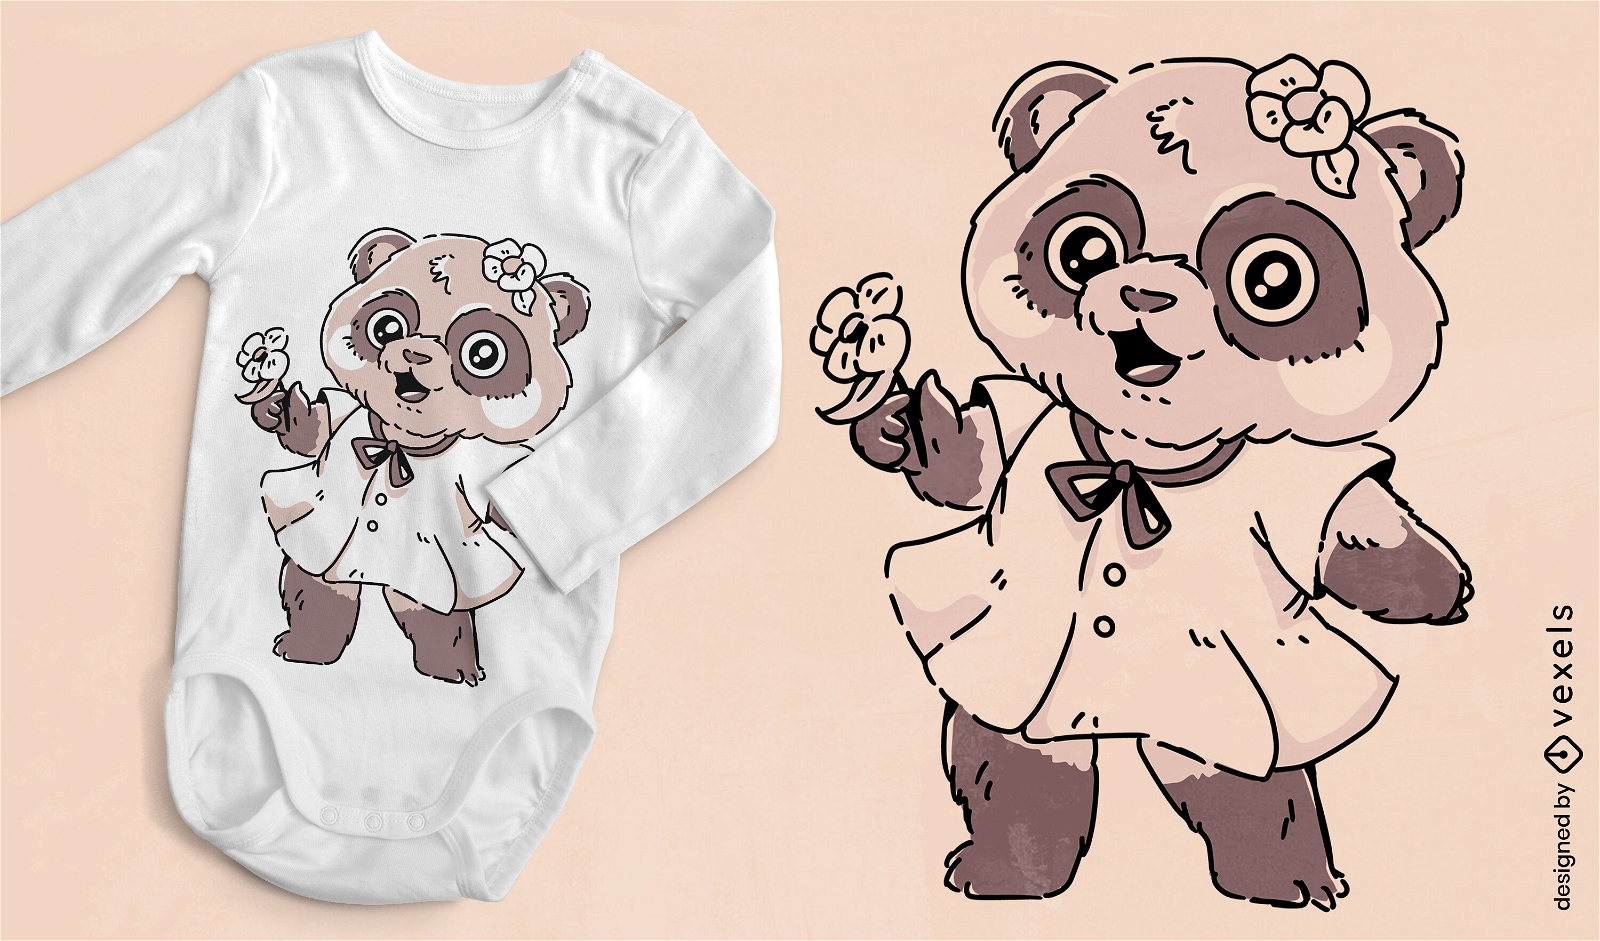 Cute panda bear baby t-shirt design